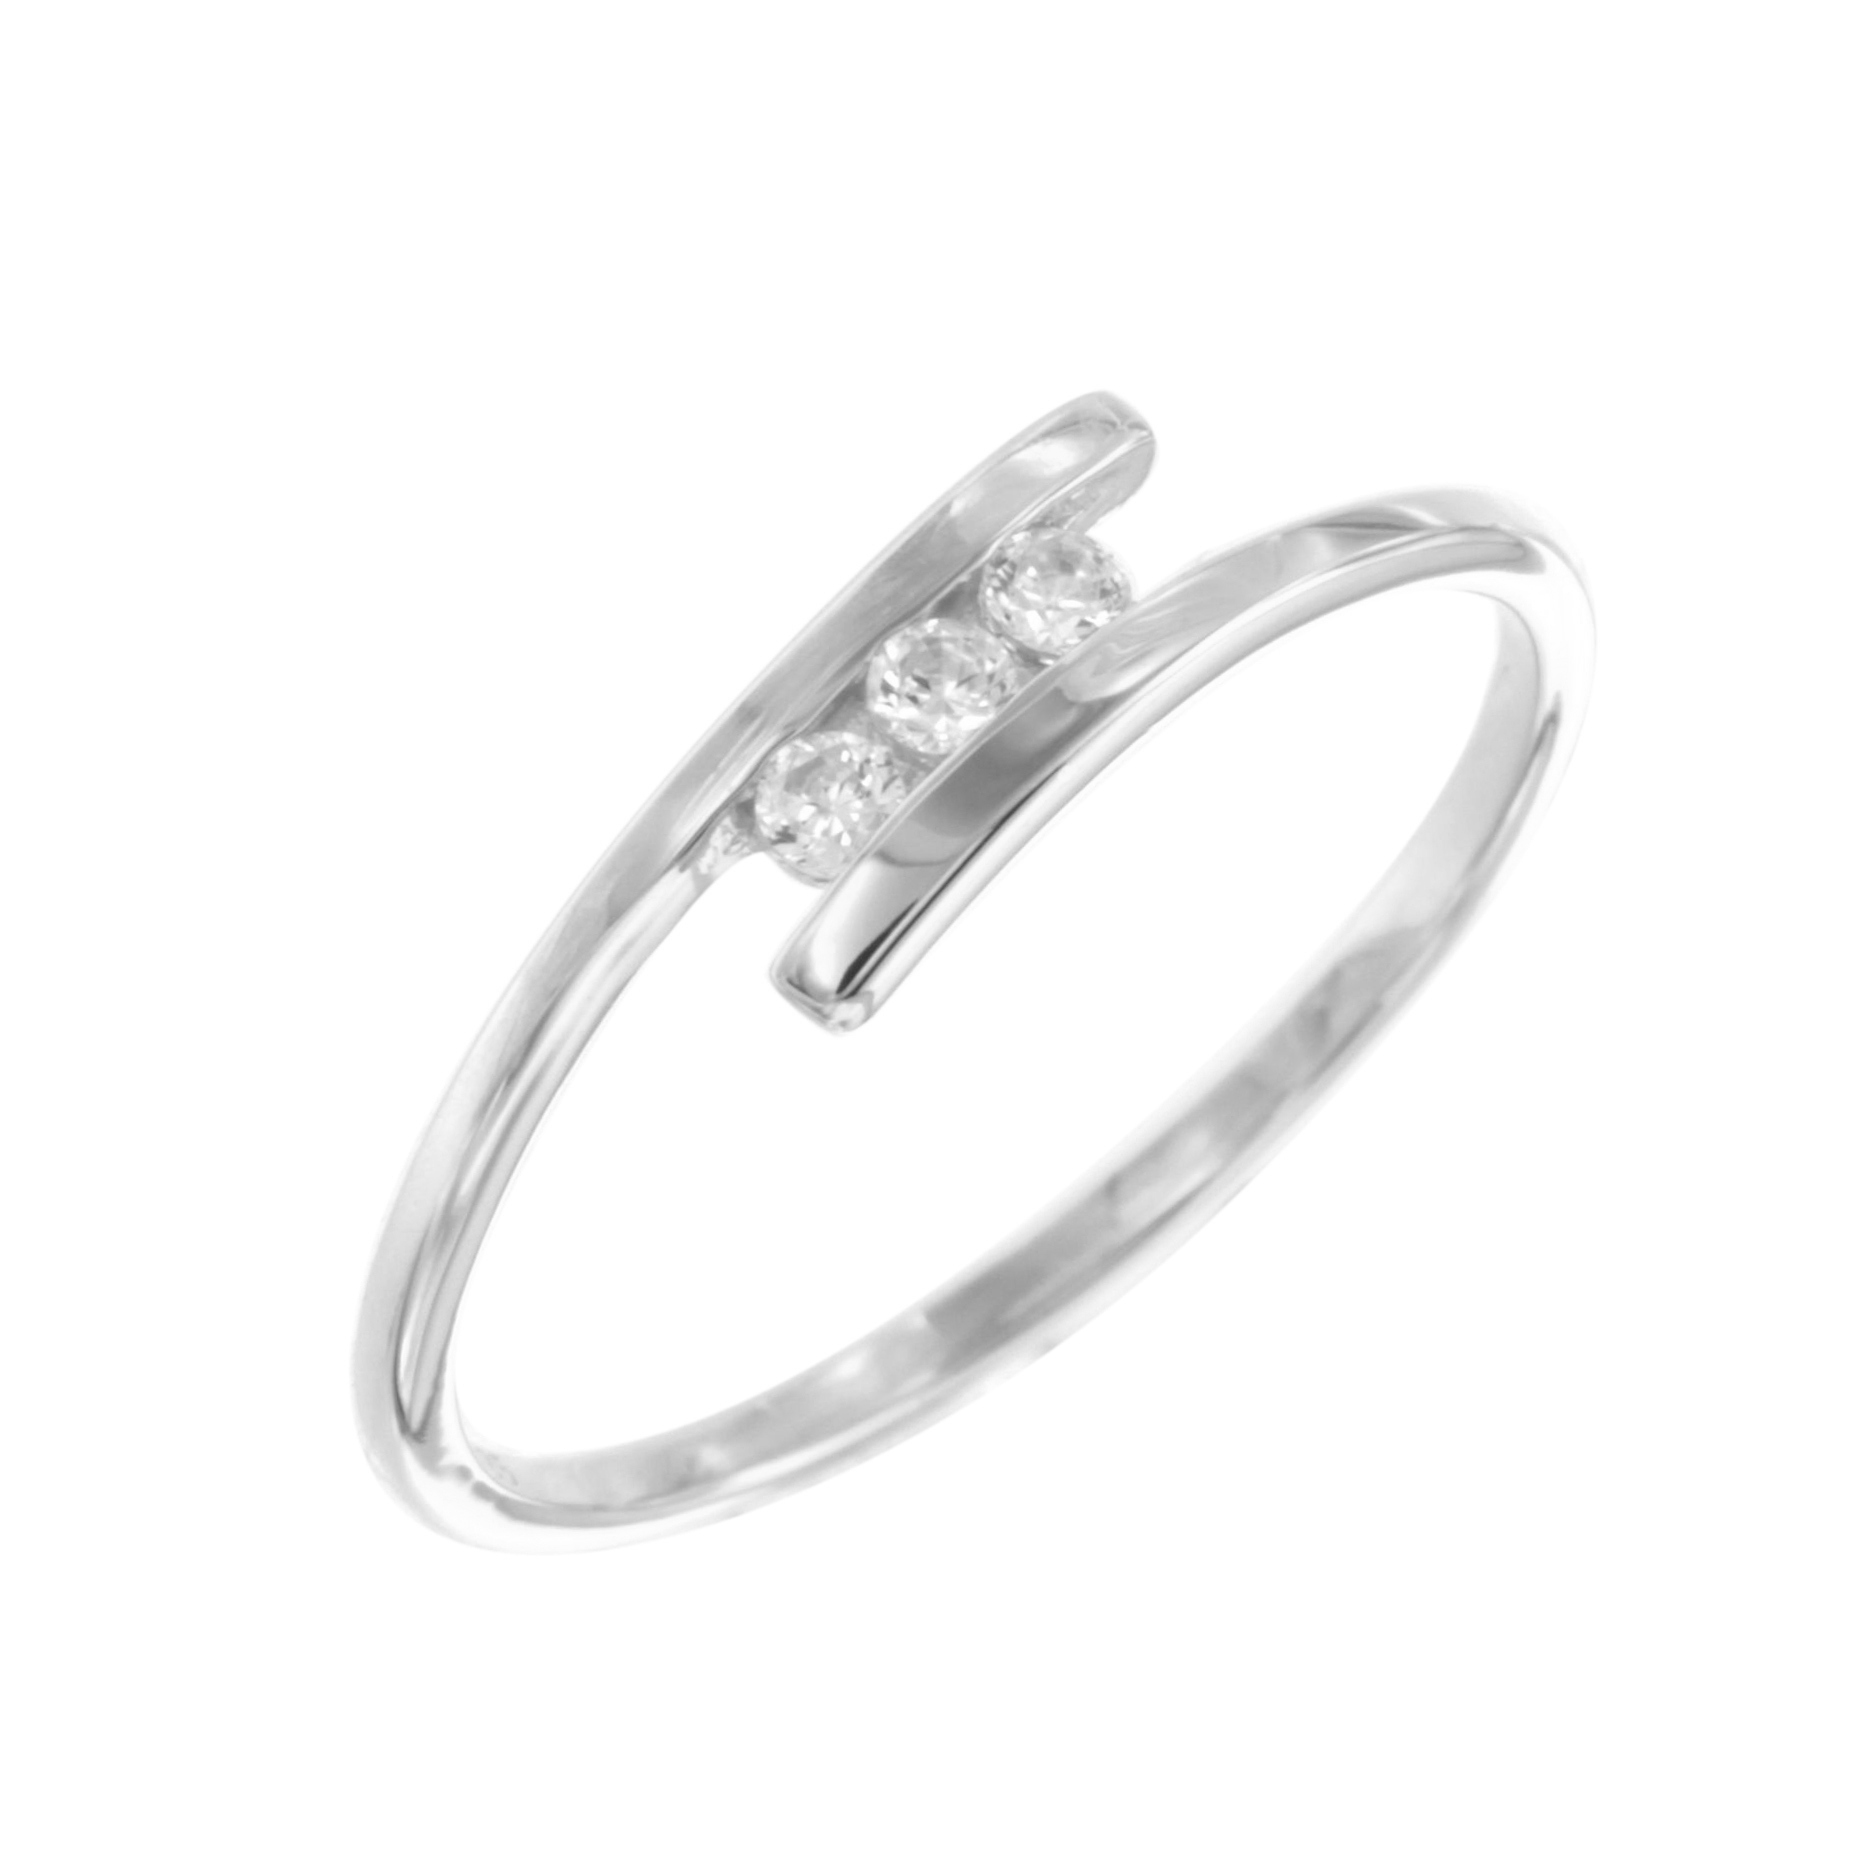 Ring van sterling zilver met zirkonia 11-7947-7080